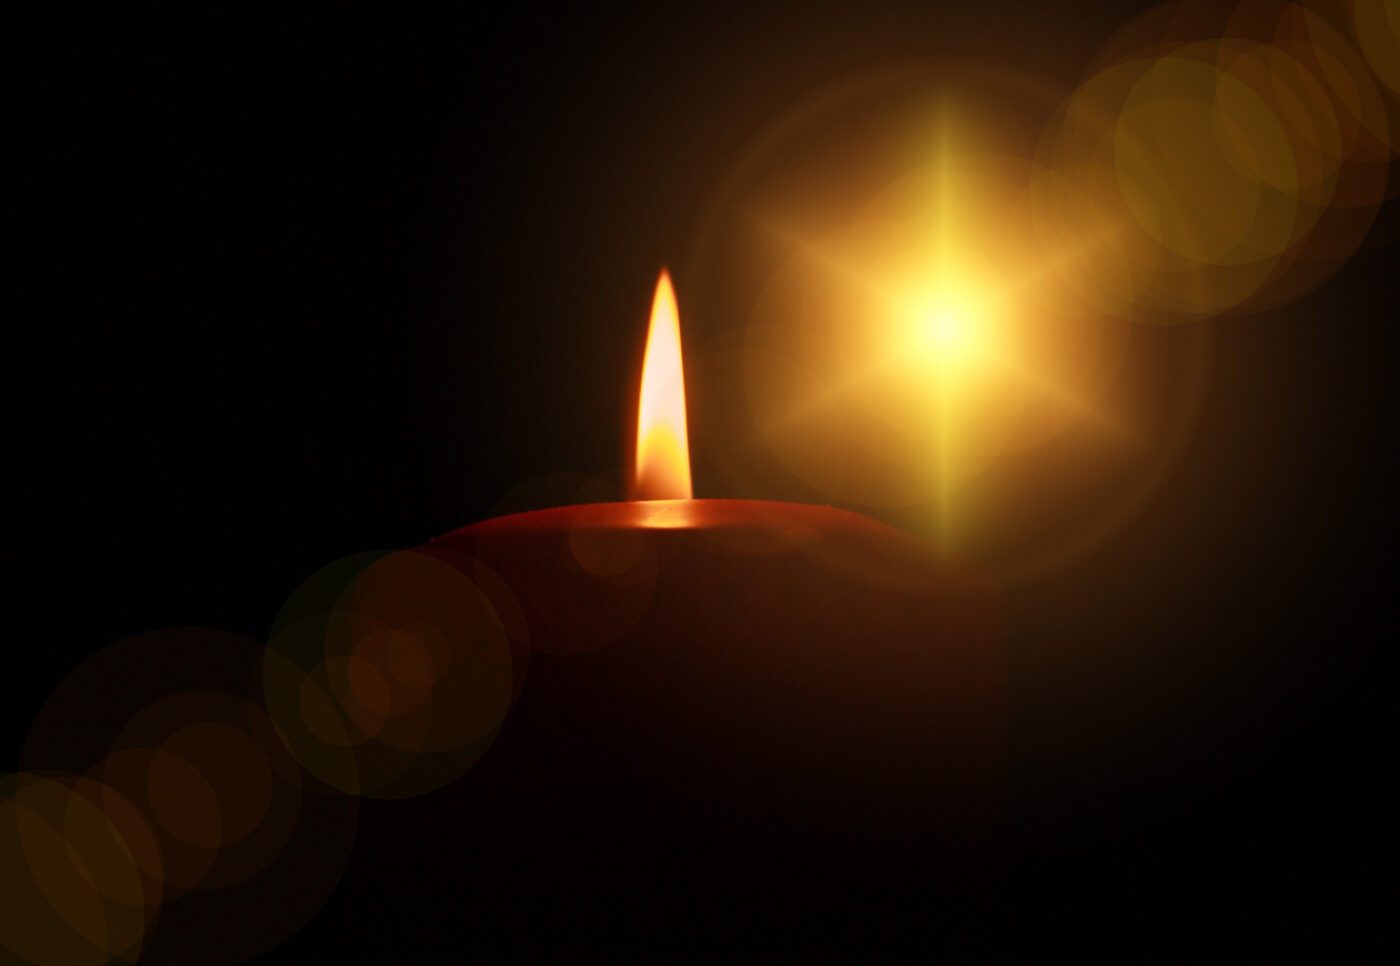 Zusammenhalt, Solidarität und ein Leben in Frieden, auch zwischen den Religionen – Wünsche für Weihnachten 2023. (Foto: pixabay / Geralt)